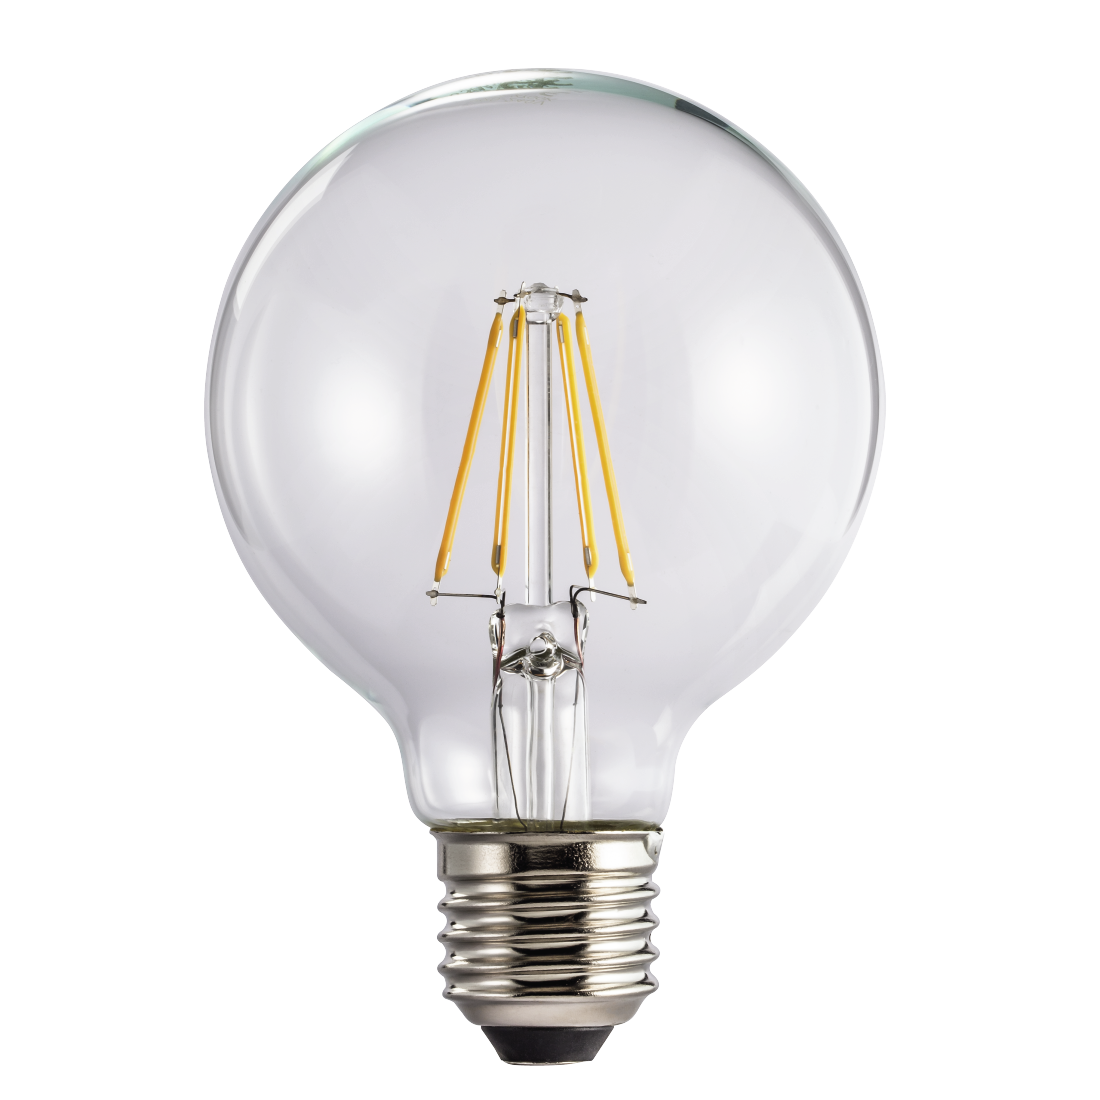 abx High-Res Image - Xavax, Ampoule filament à LED, E27, 470lm rempl. ampoule globe 40W, blc chaud